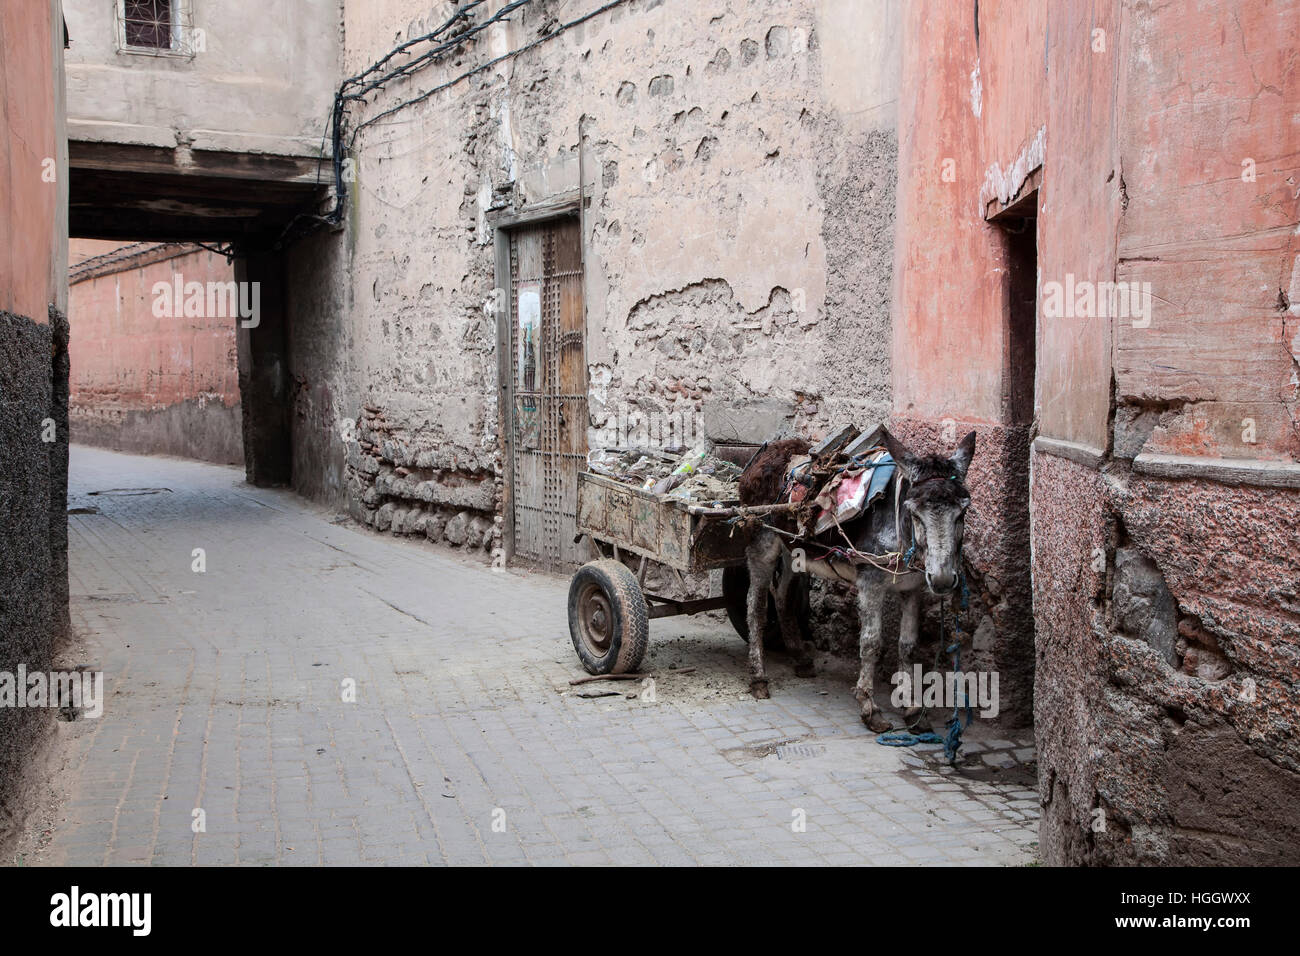 Esel und Karren in Gasse, Marrakesch, Marokko Stockfoto